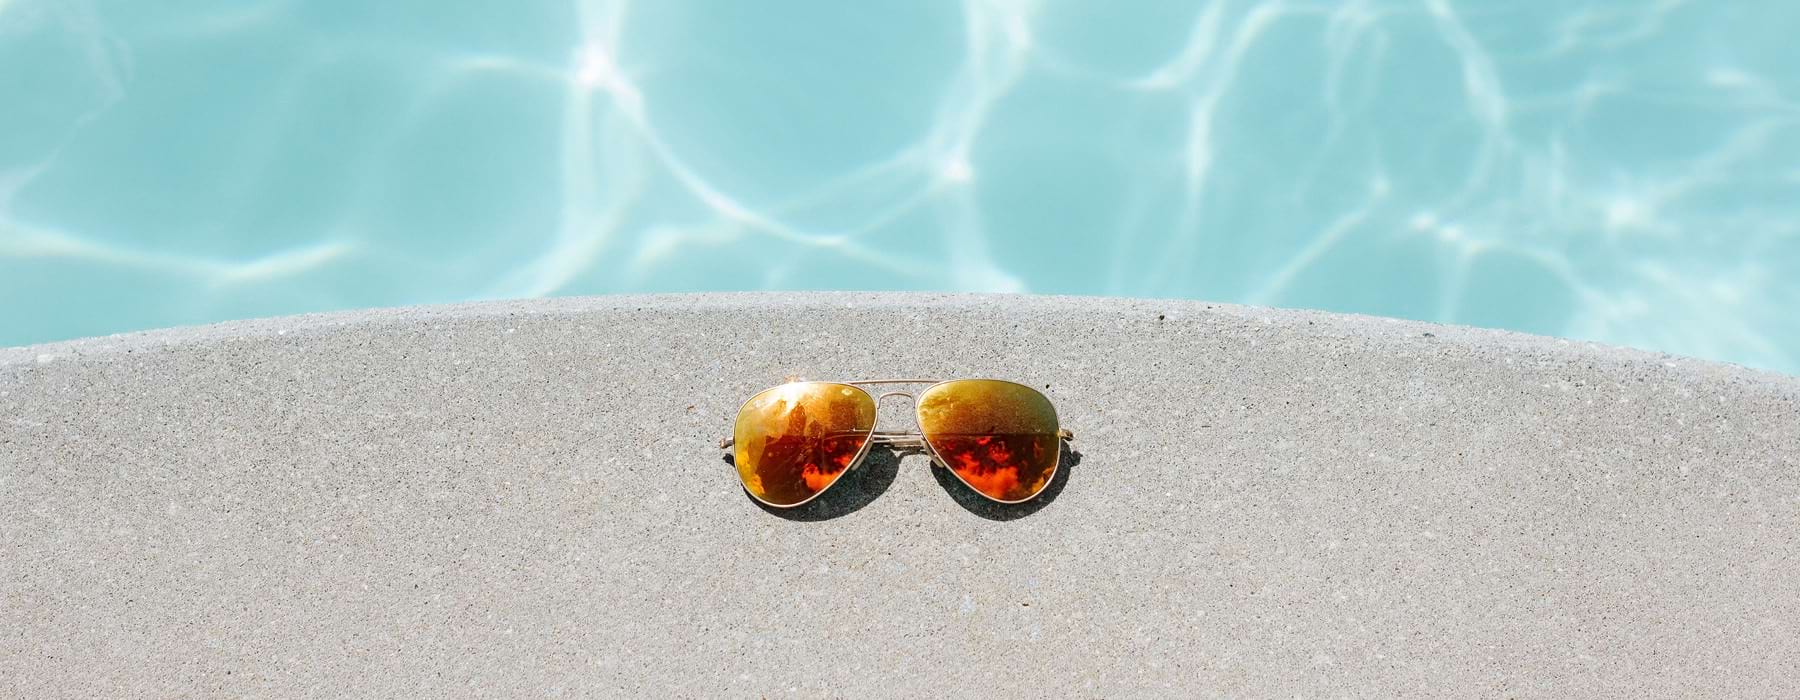 sunglasses rest on pool's edge